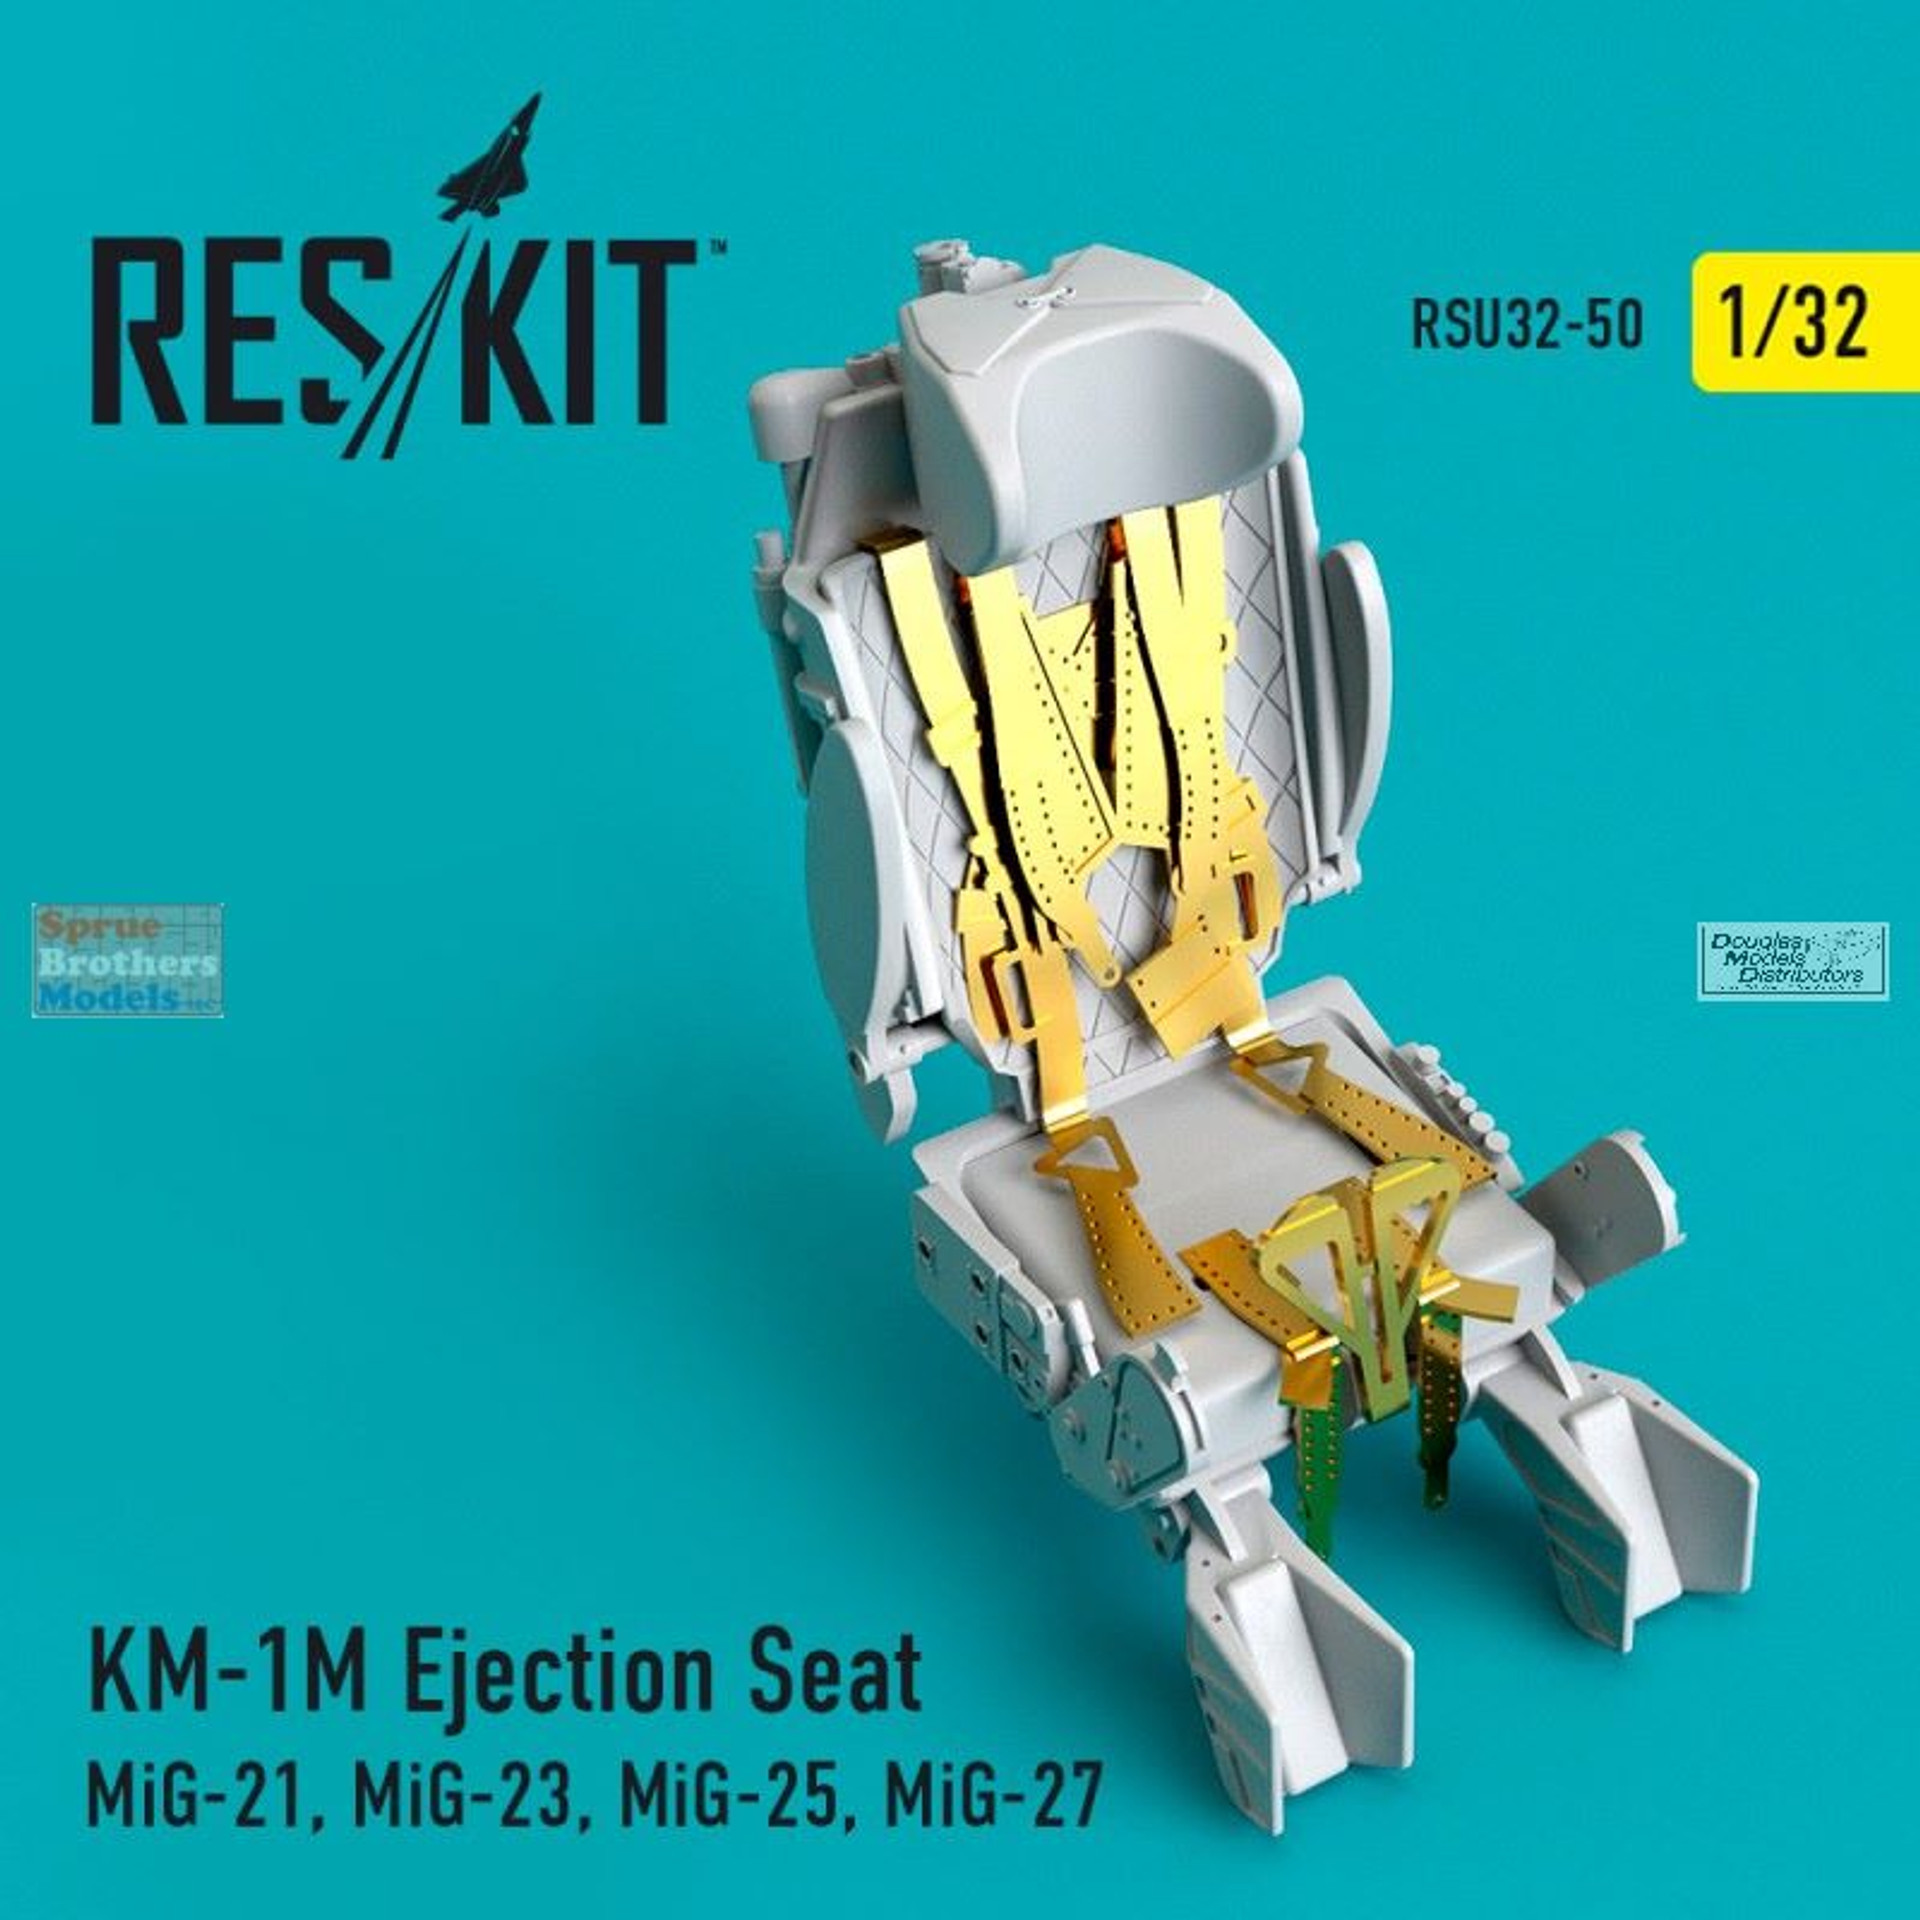 RESRSU320050U 1:32 ResKit KM-1M Mig-21 Mig-23 Mig-25 Mig-27 Ejection .